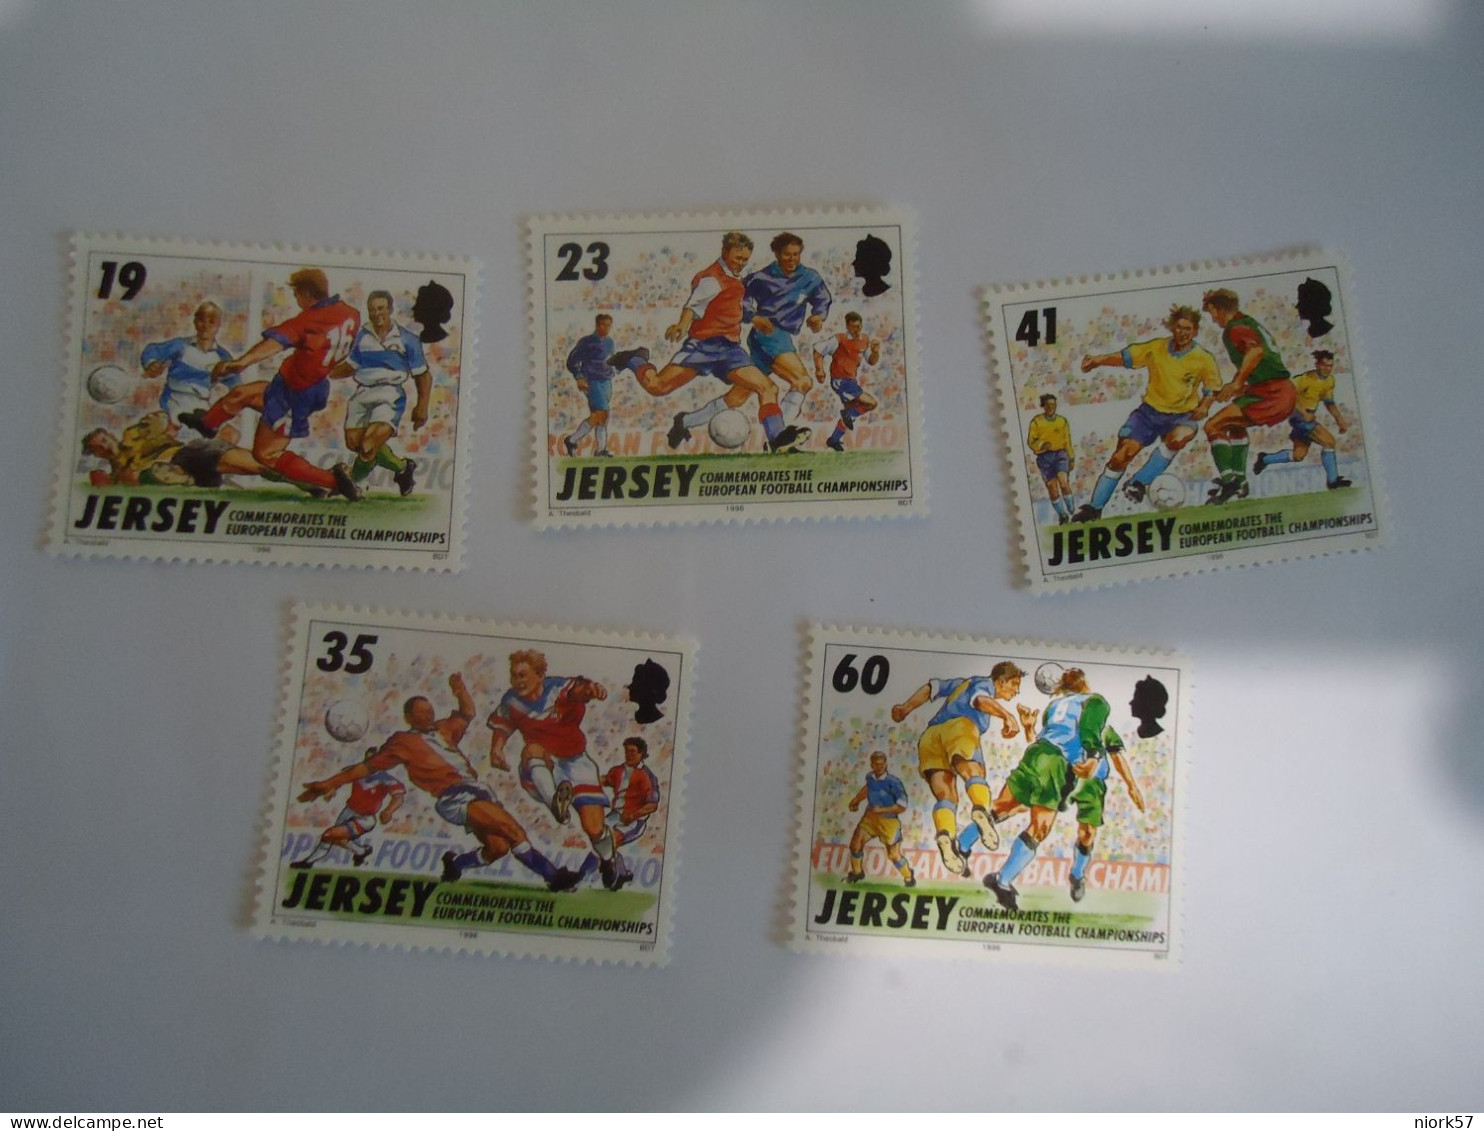 JERSEY MNH  5  STAMPS FOOTBALL CHAMPIONSHIP  1986 - Fußball-Europameisterschaft (UEFA)